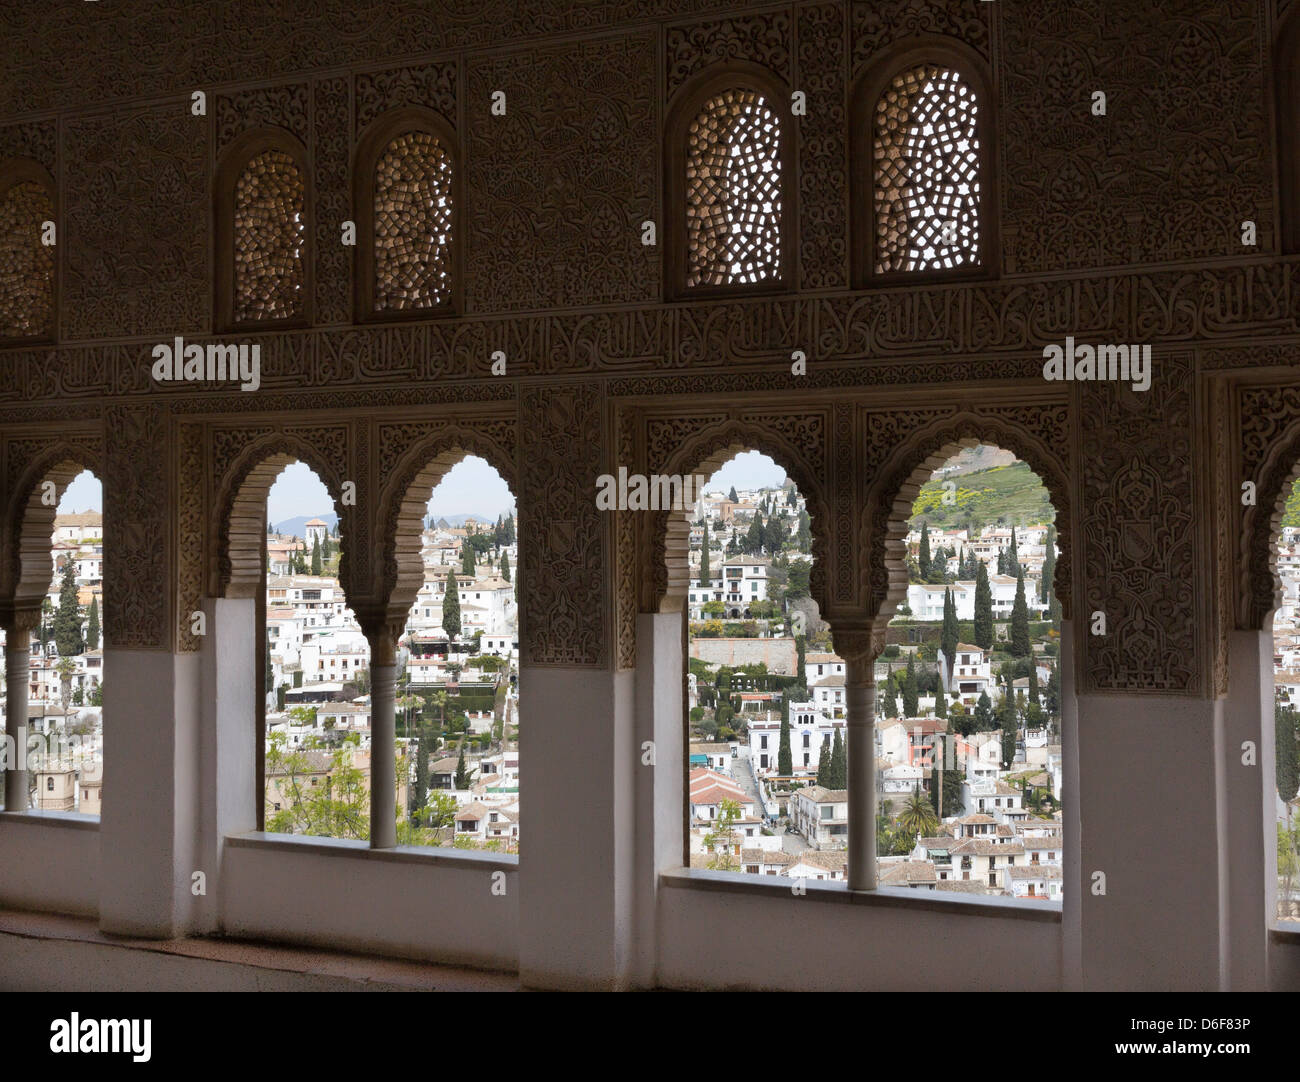 L'intérieur de l'oratoire, les Palais Nasrides, Alhambra, Grenade. Maisons d'Albaicin est visible à travers les fenêtres. Banque D'Images